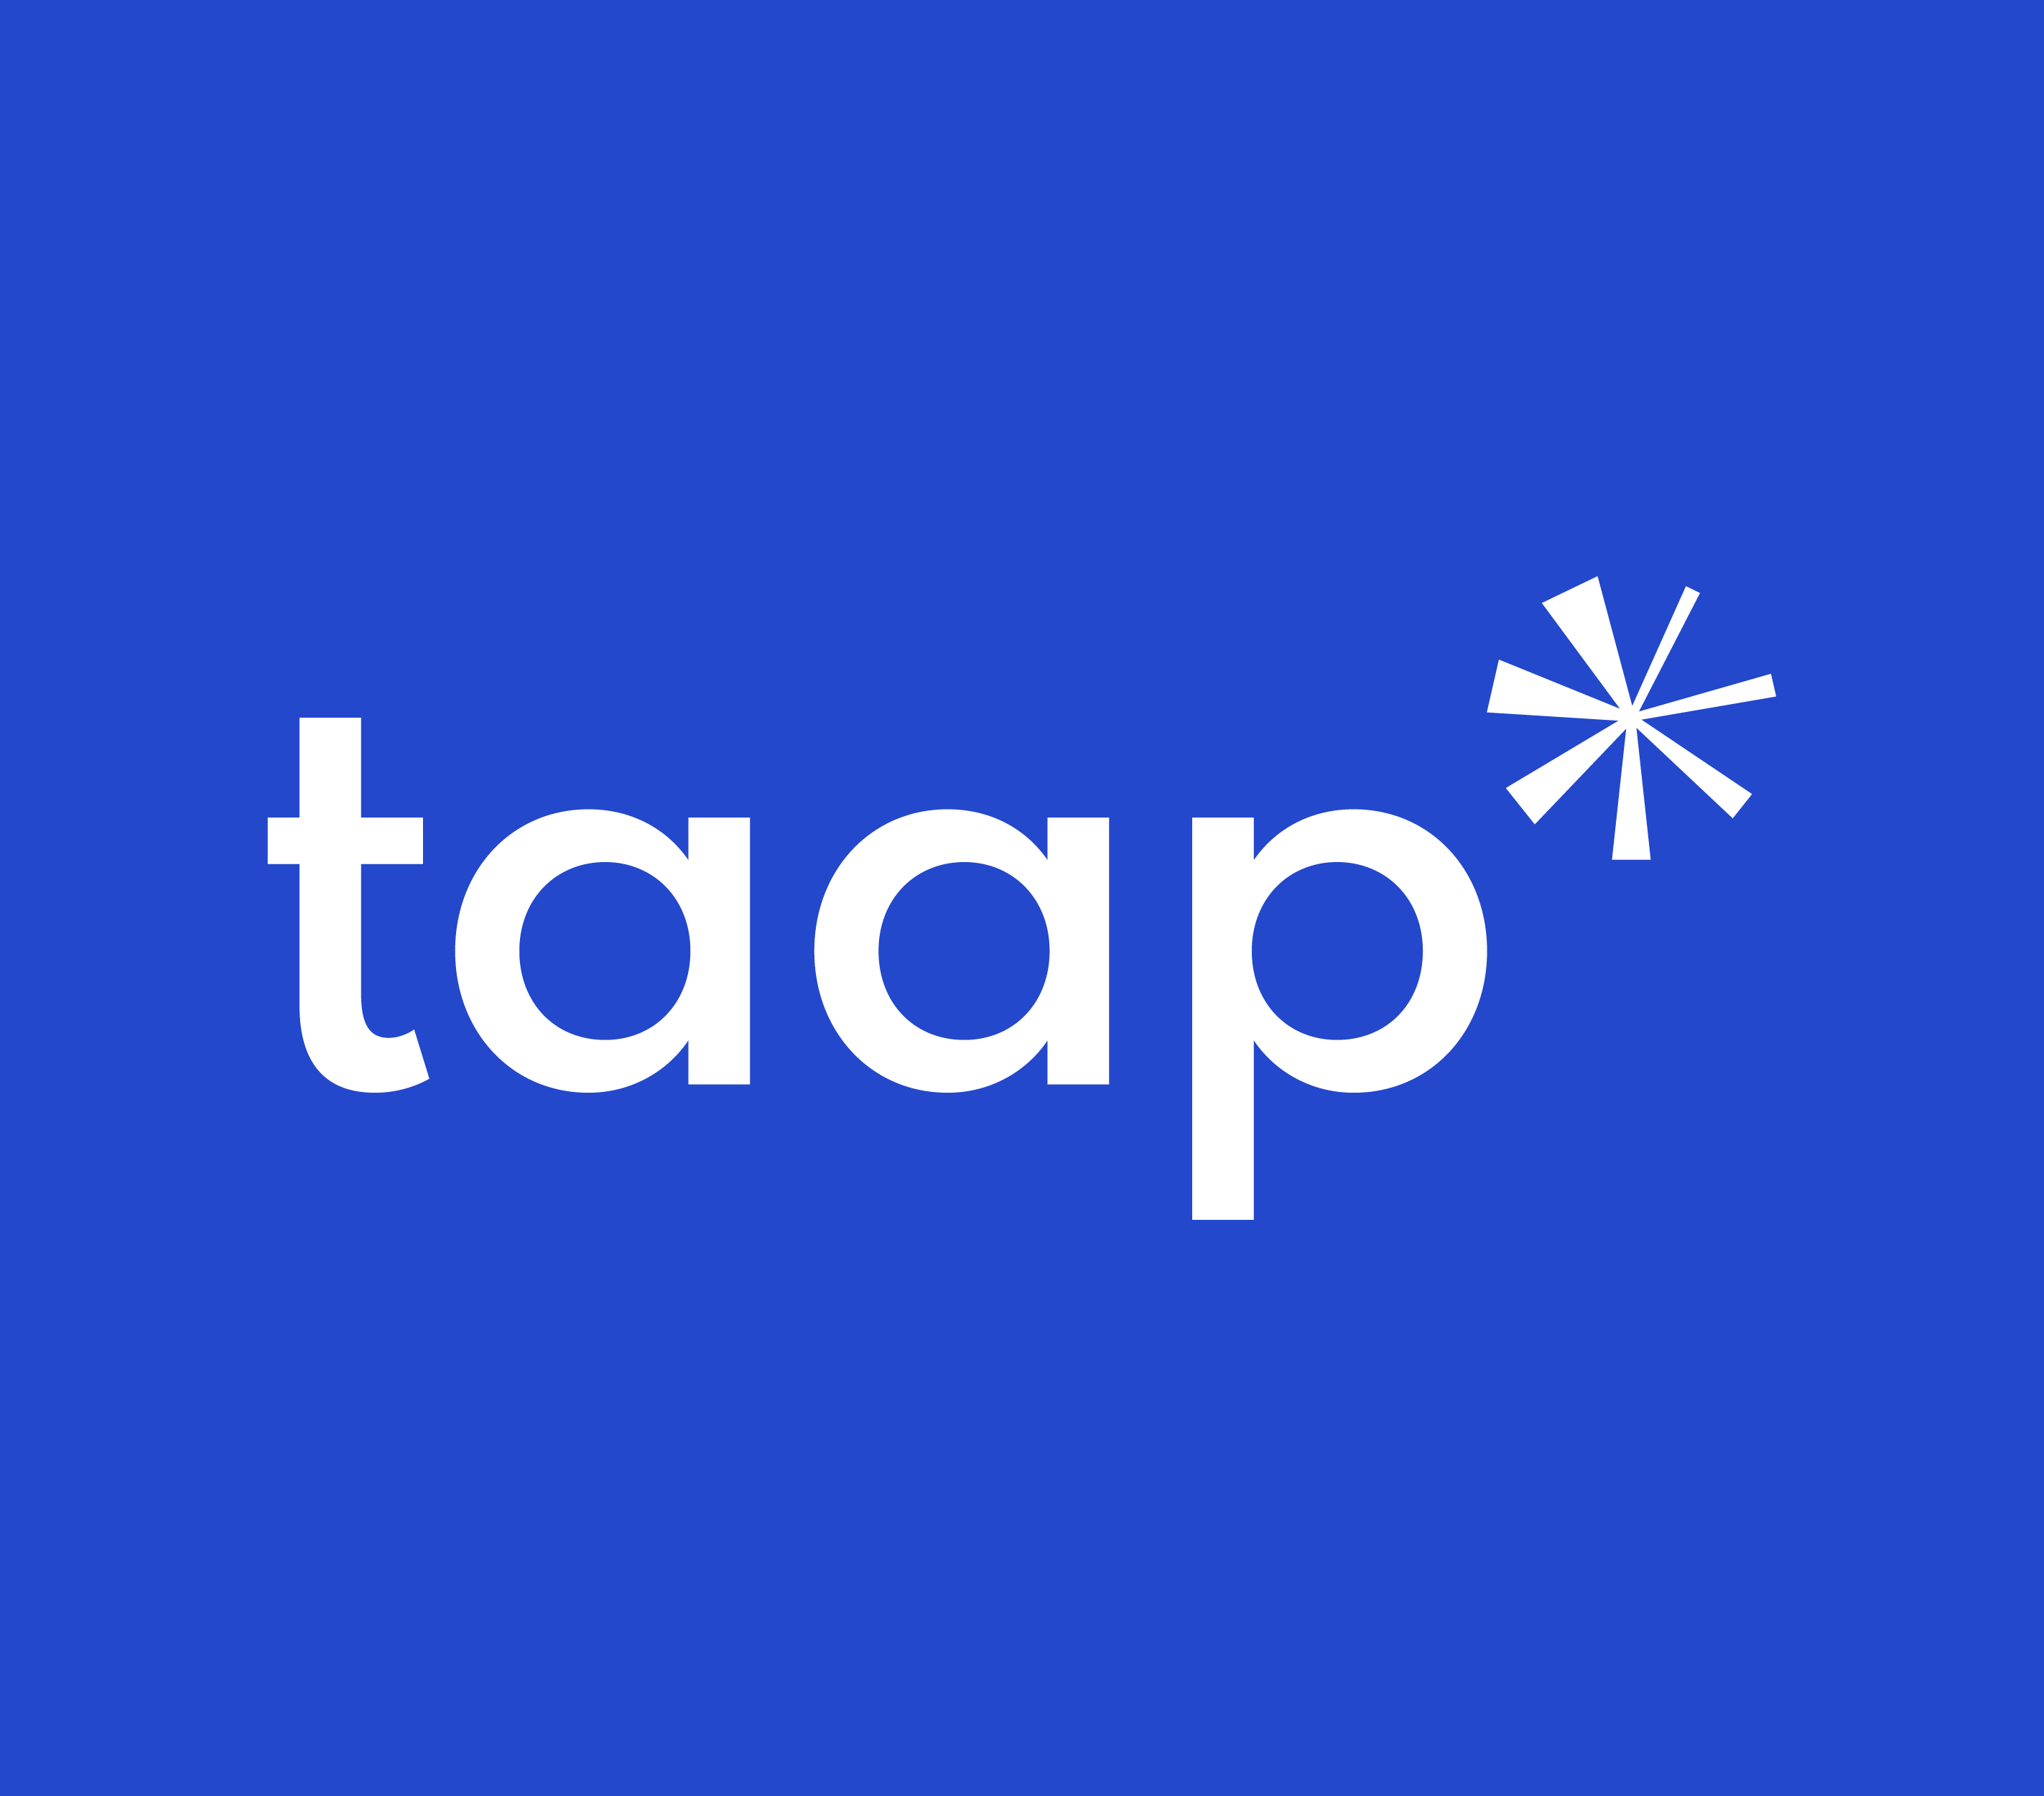 Logo bianco su fondo blu. Nello specifico è rappresentato il logo completo di taap studio: taap*